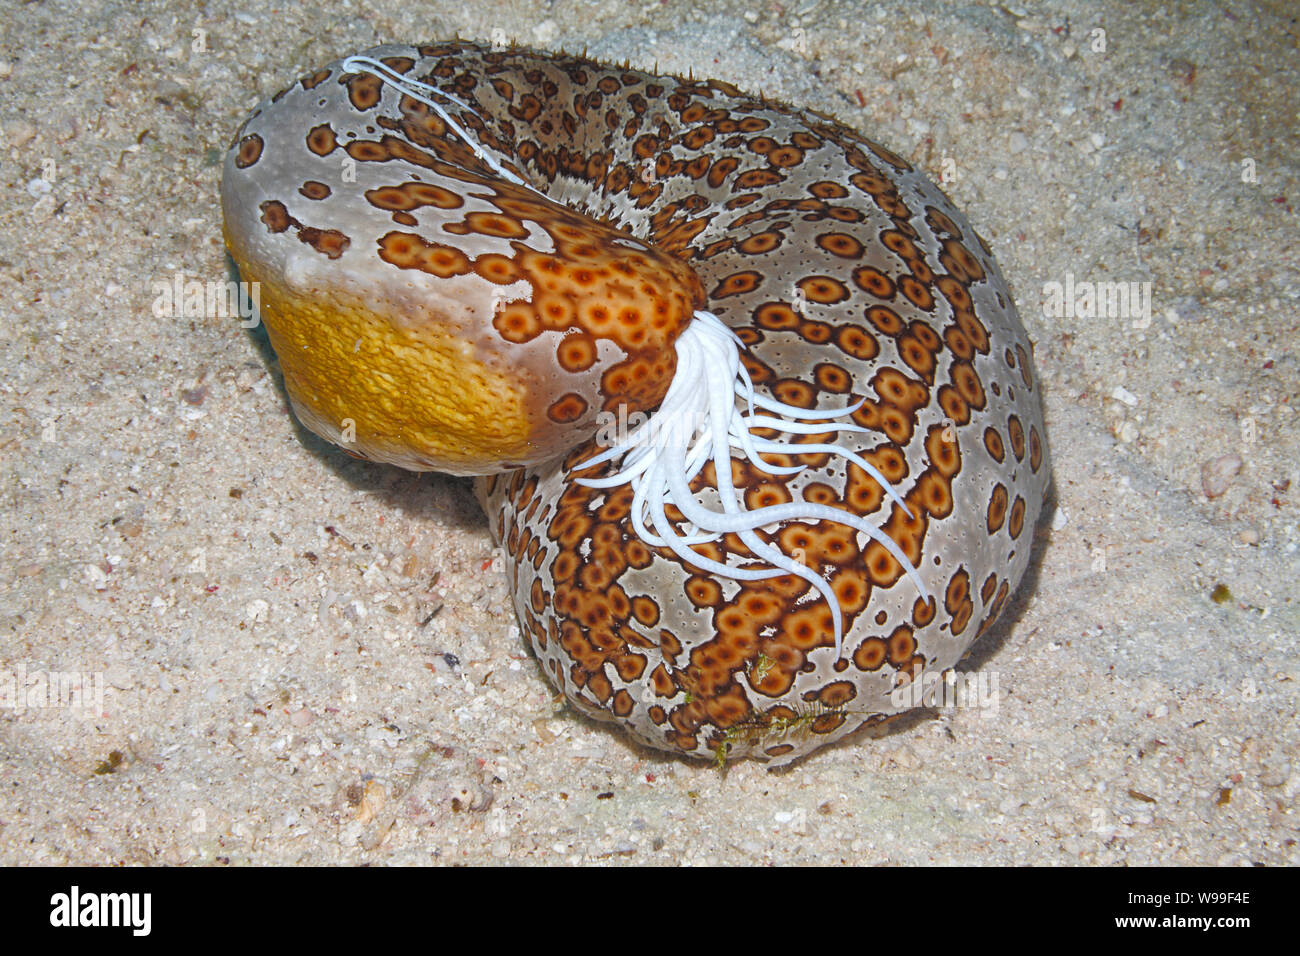 Leopard le concombre de mer, Bohadschia Argus, de l'extrusion de l'Cuvierian collant blanc de tubules de l'anus. Uepi, Îles Salomon. Mer, Océan Pacifique Salomon Banque D'Images